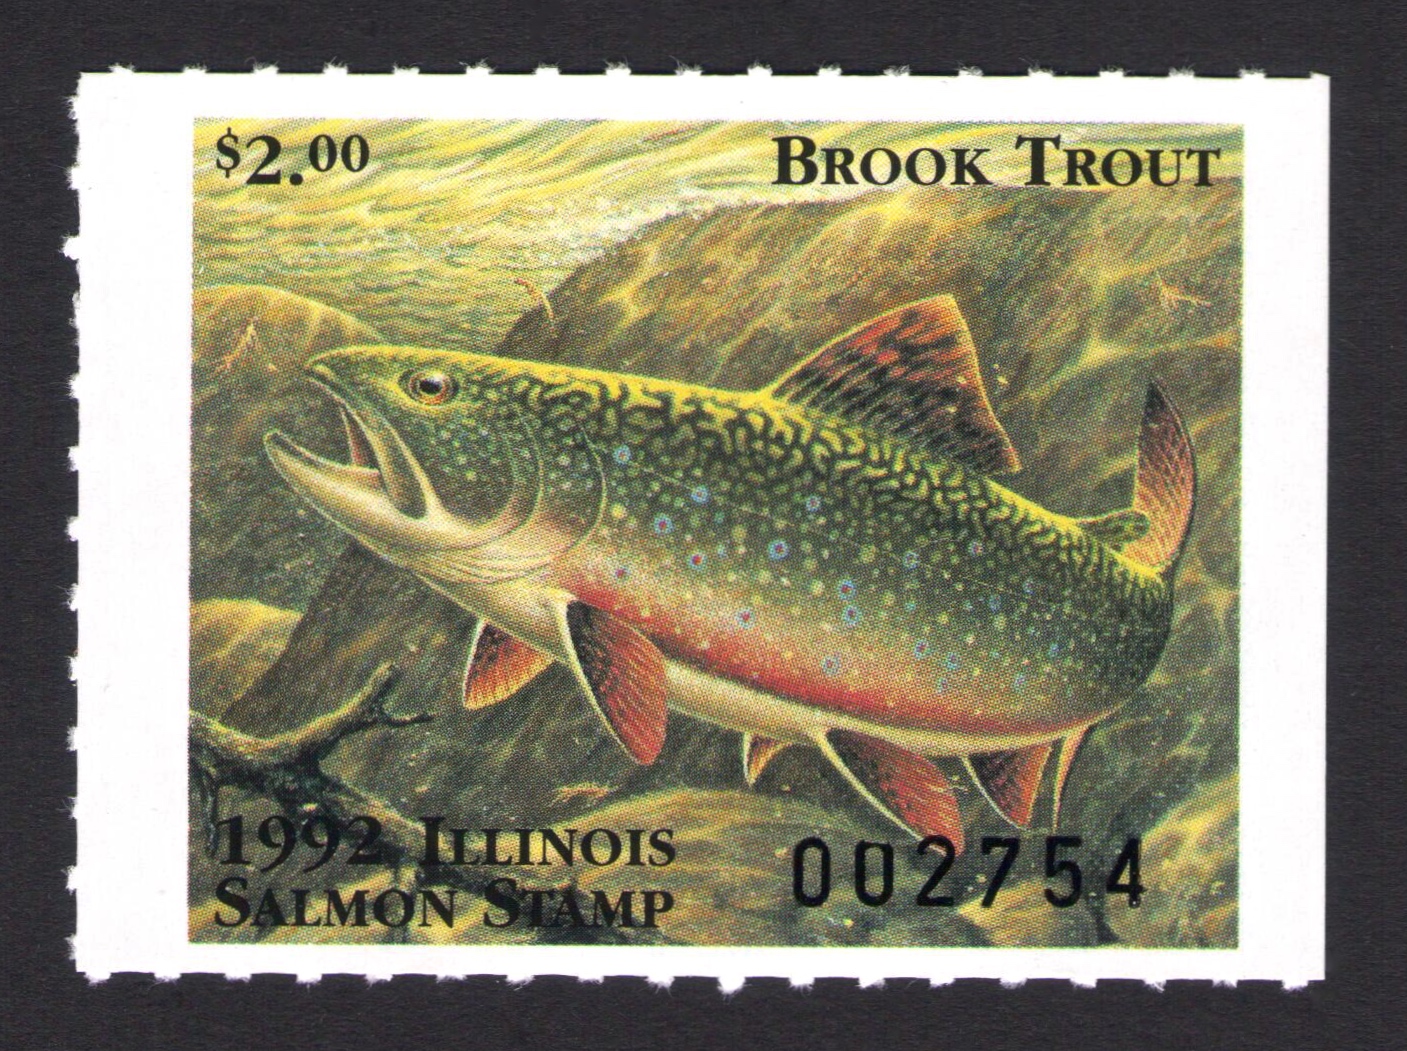 1992 Illinois Salmon